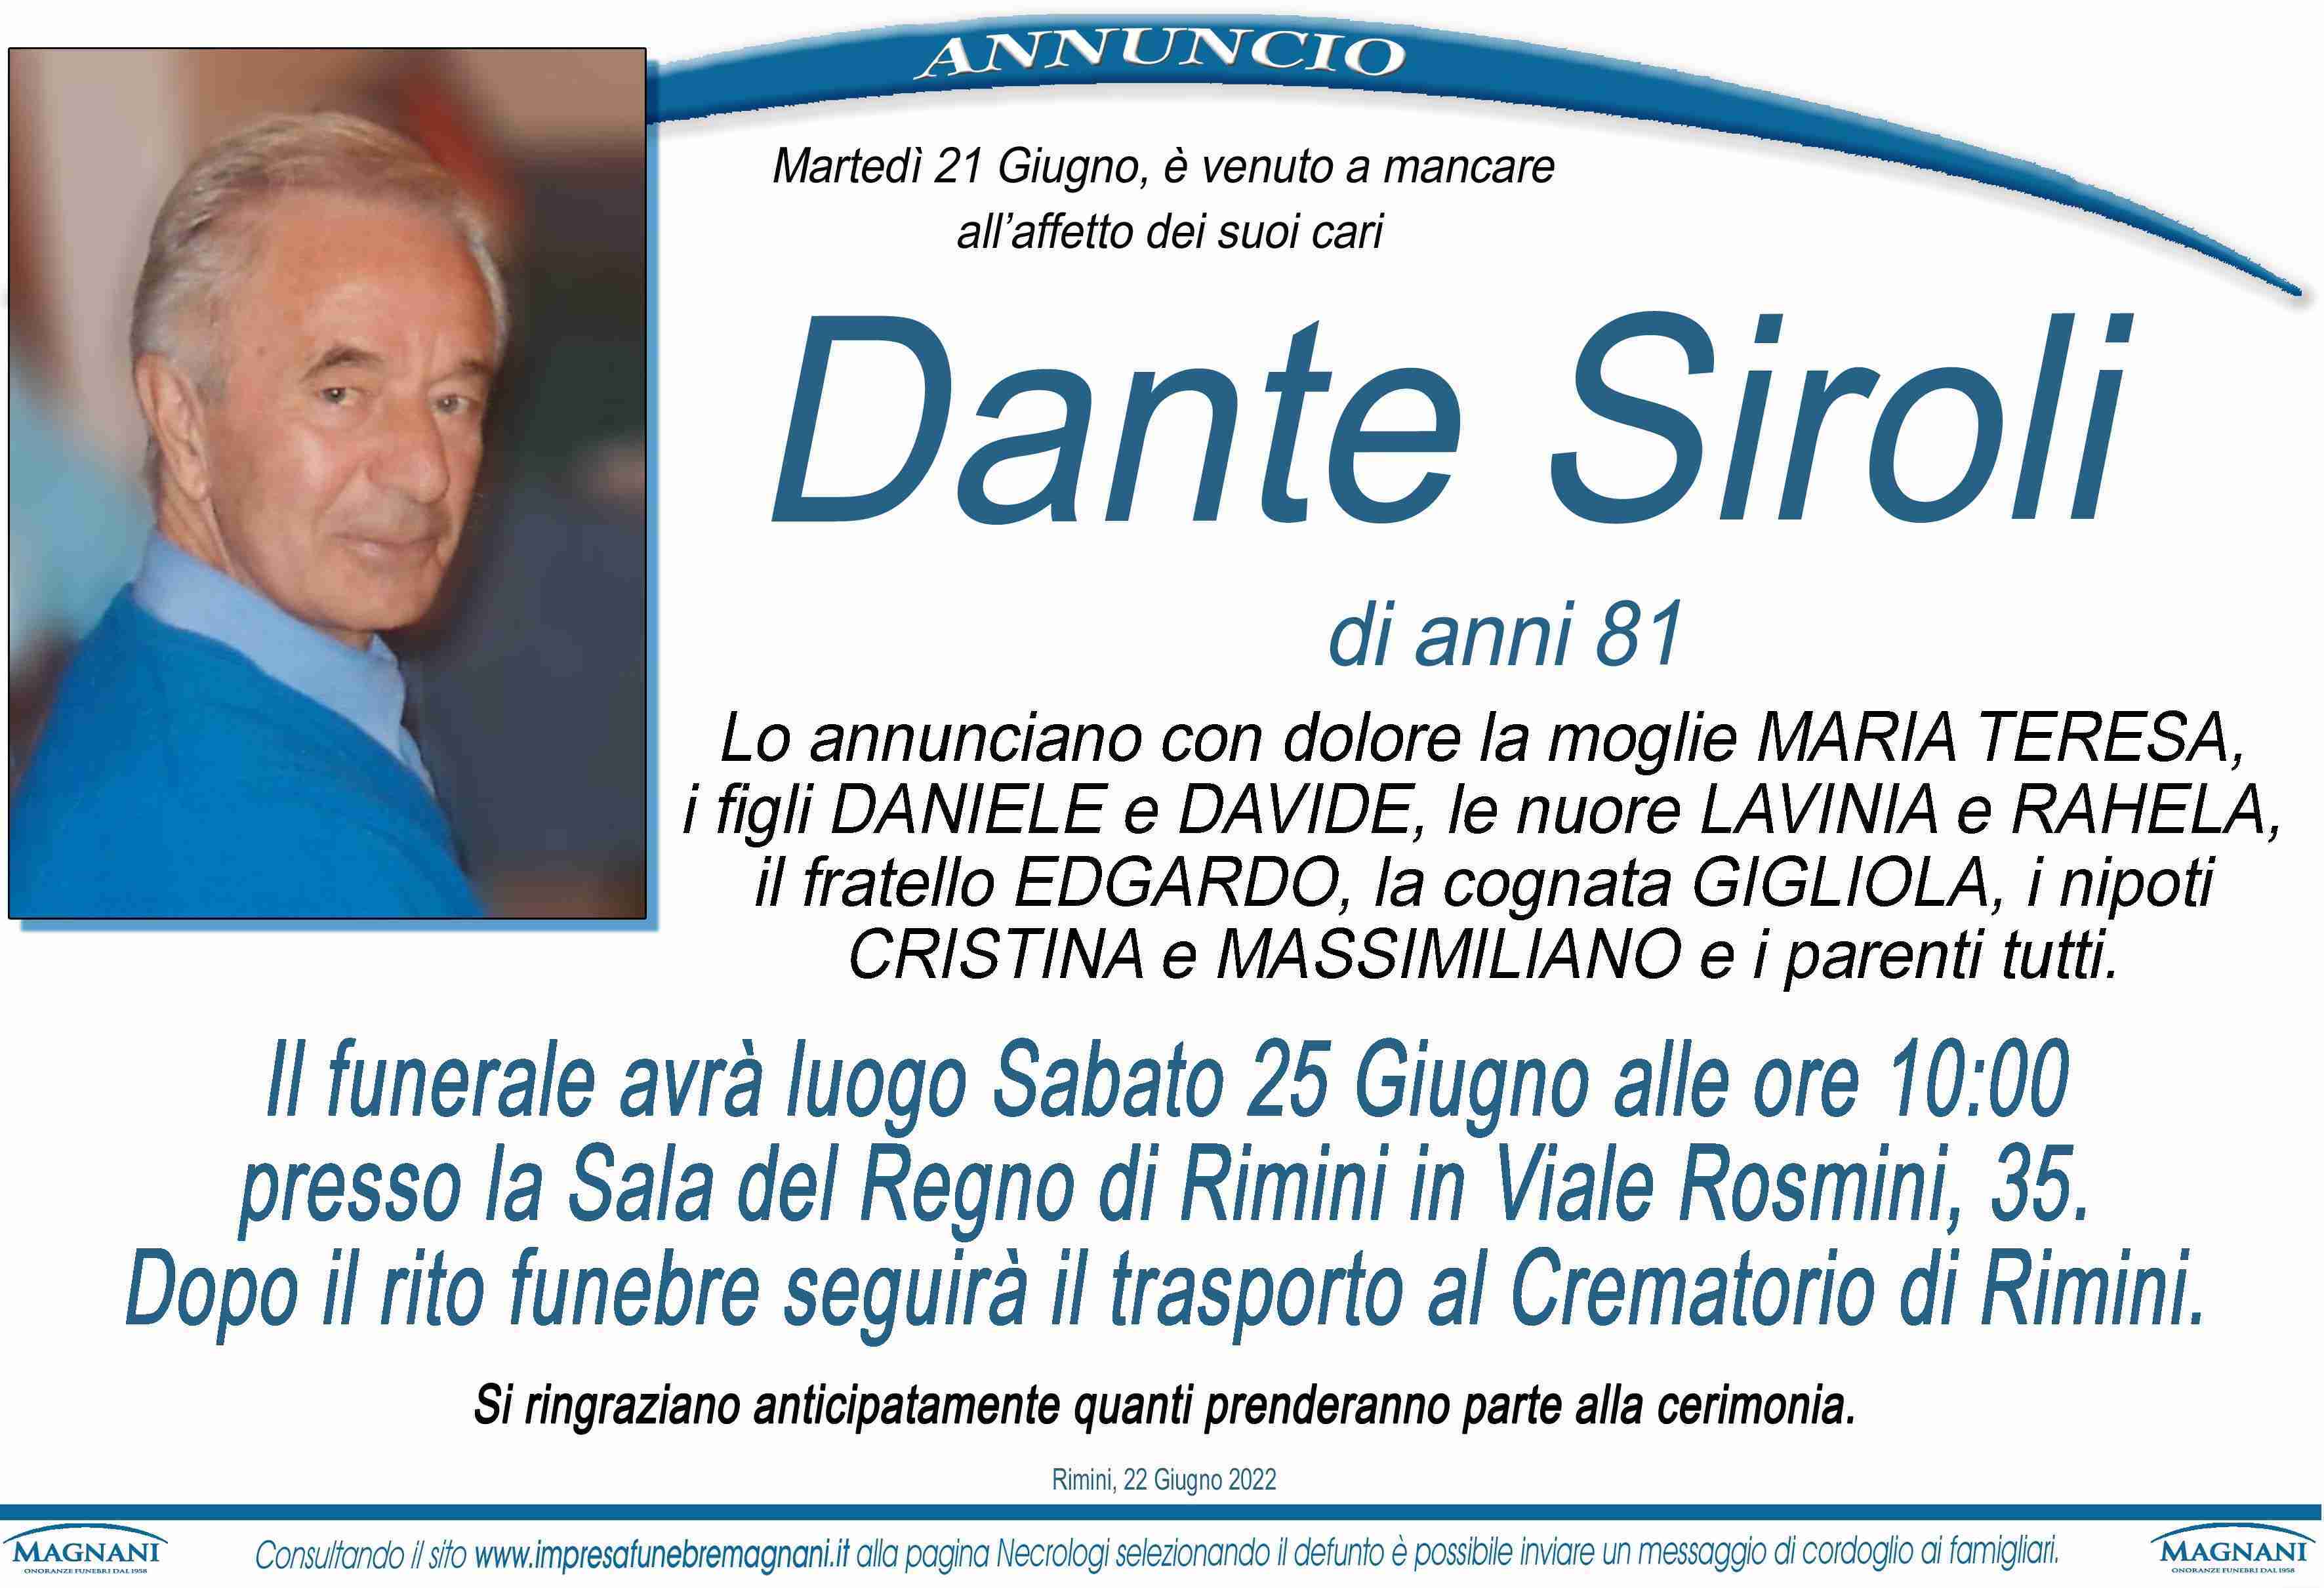 Dante Siroli